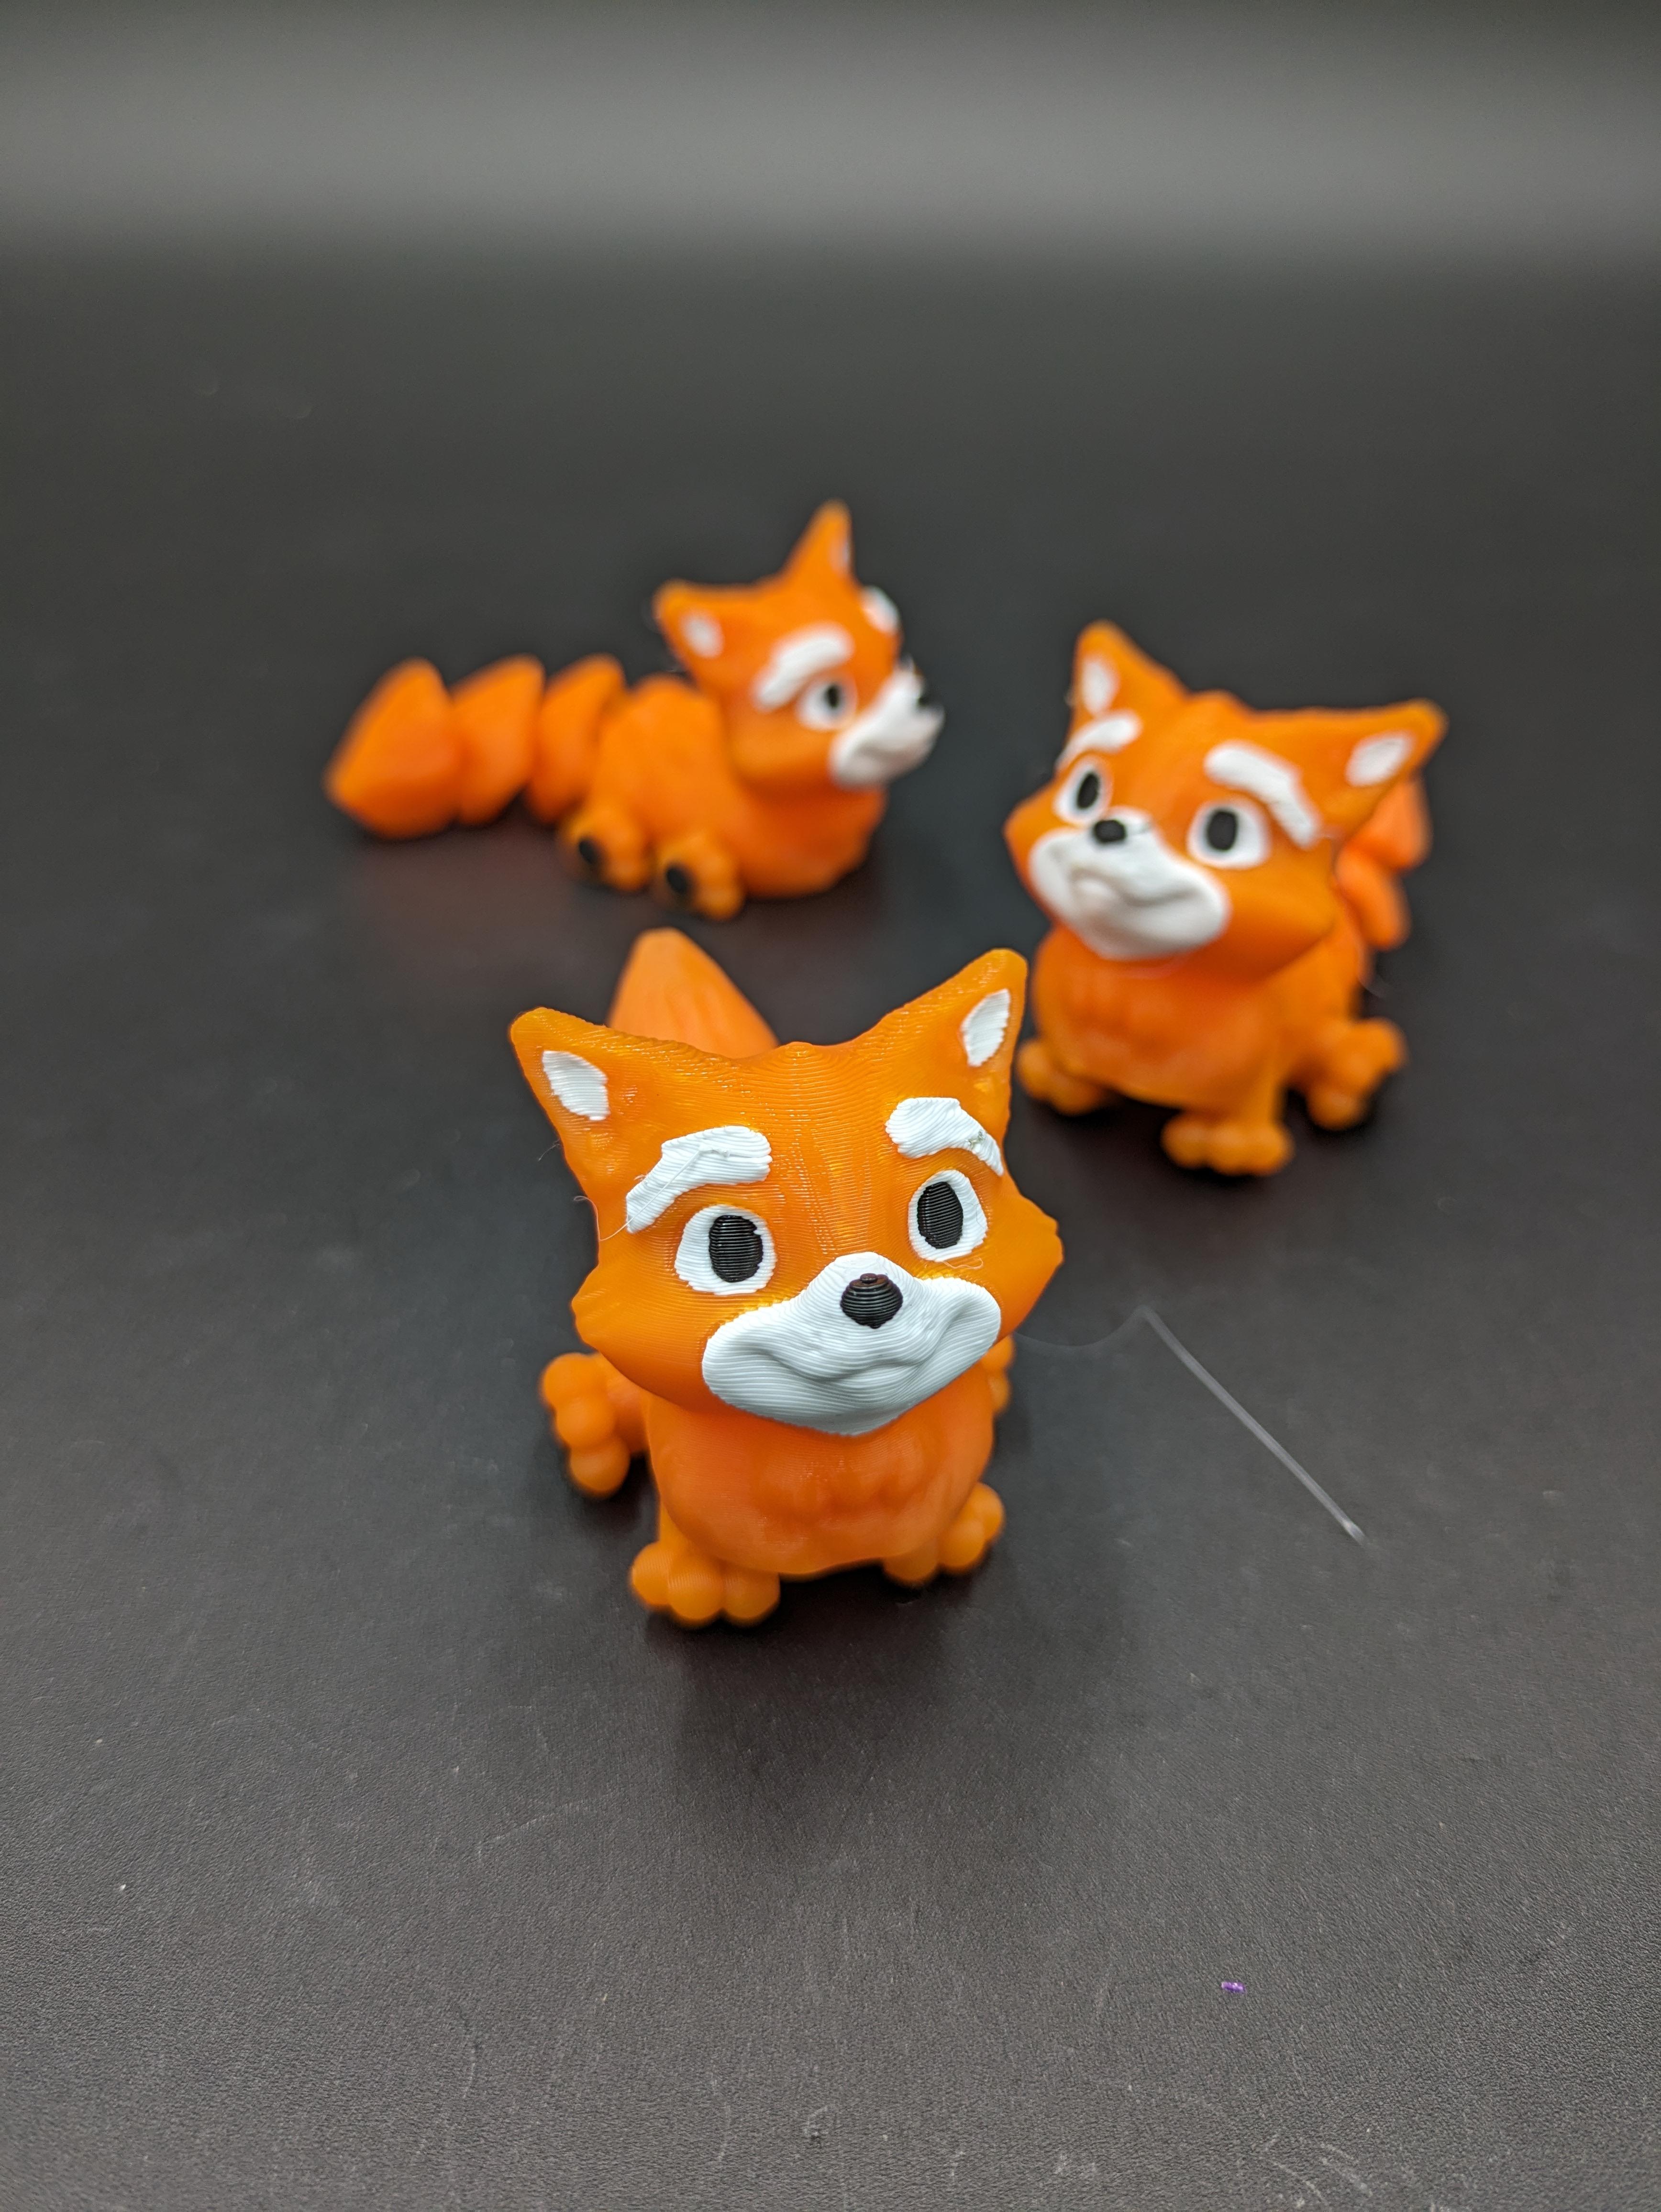 Articulated Fox - Snap-Flex Fidget Toy 3d model